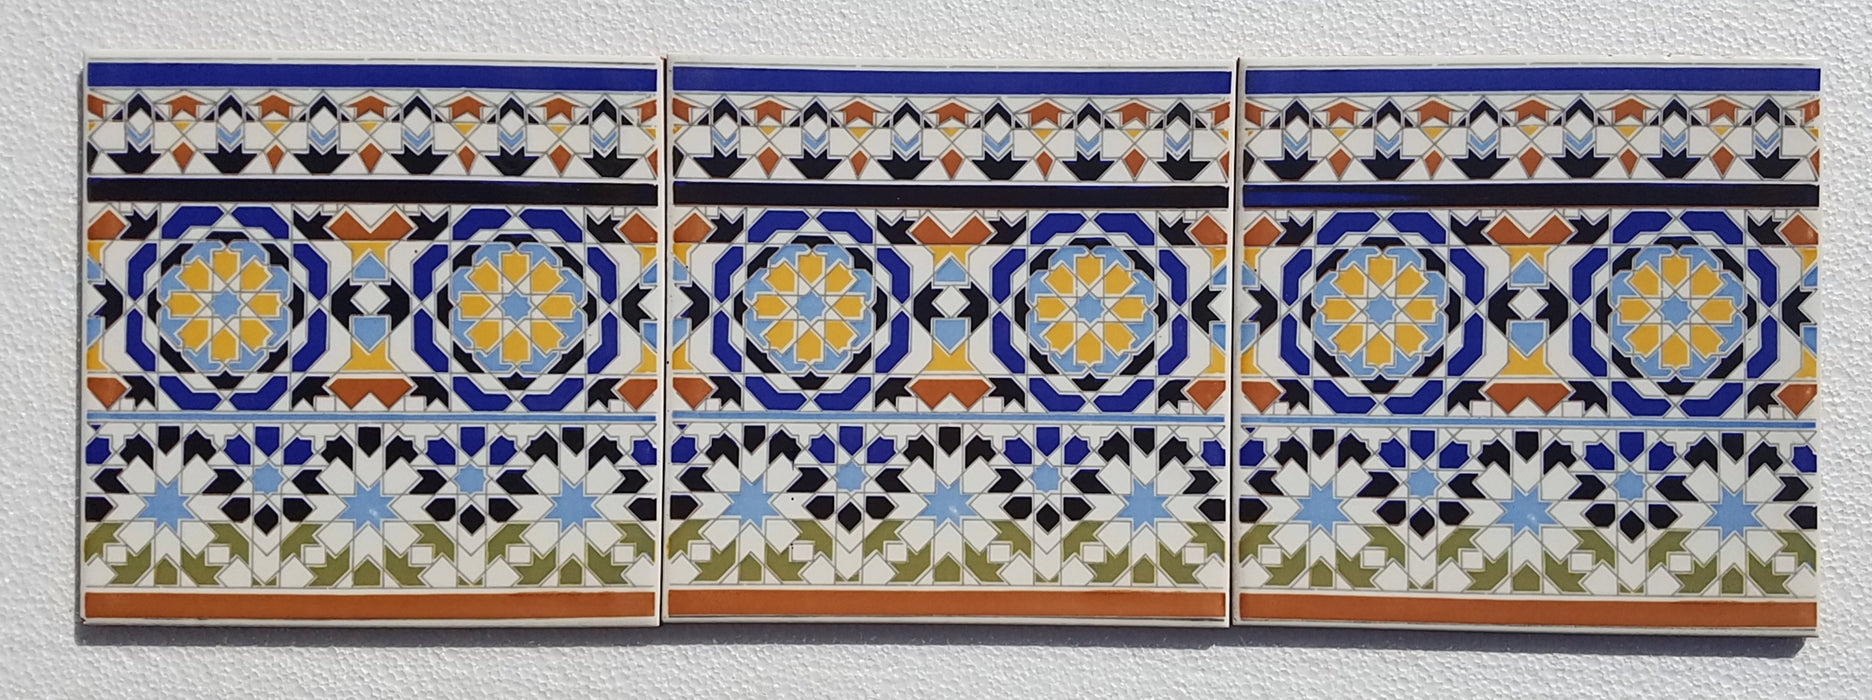 Moorish border tile